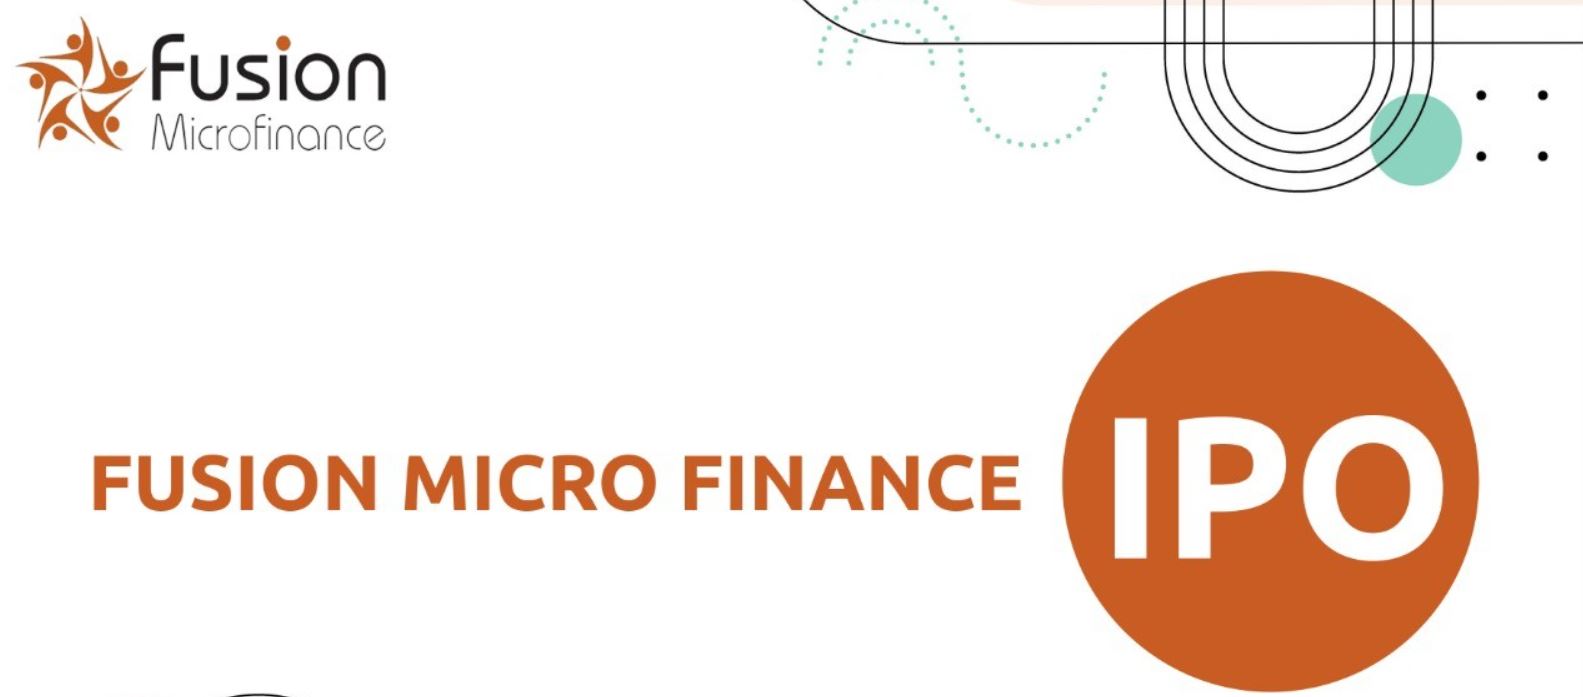 Fusion Micro Finance IPO 